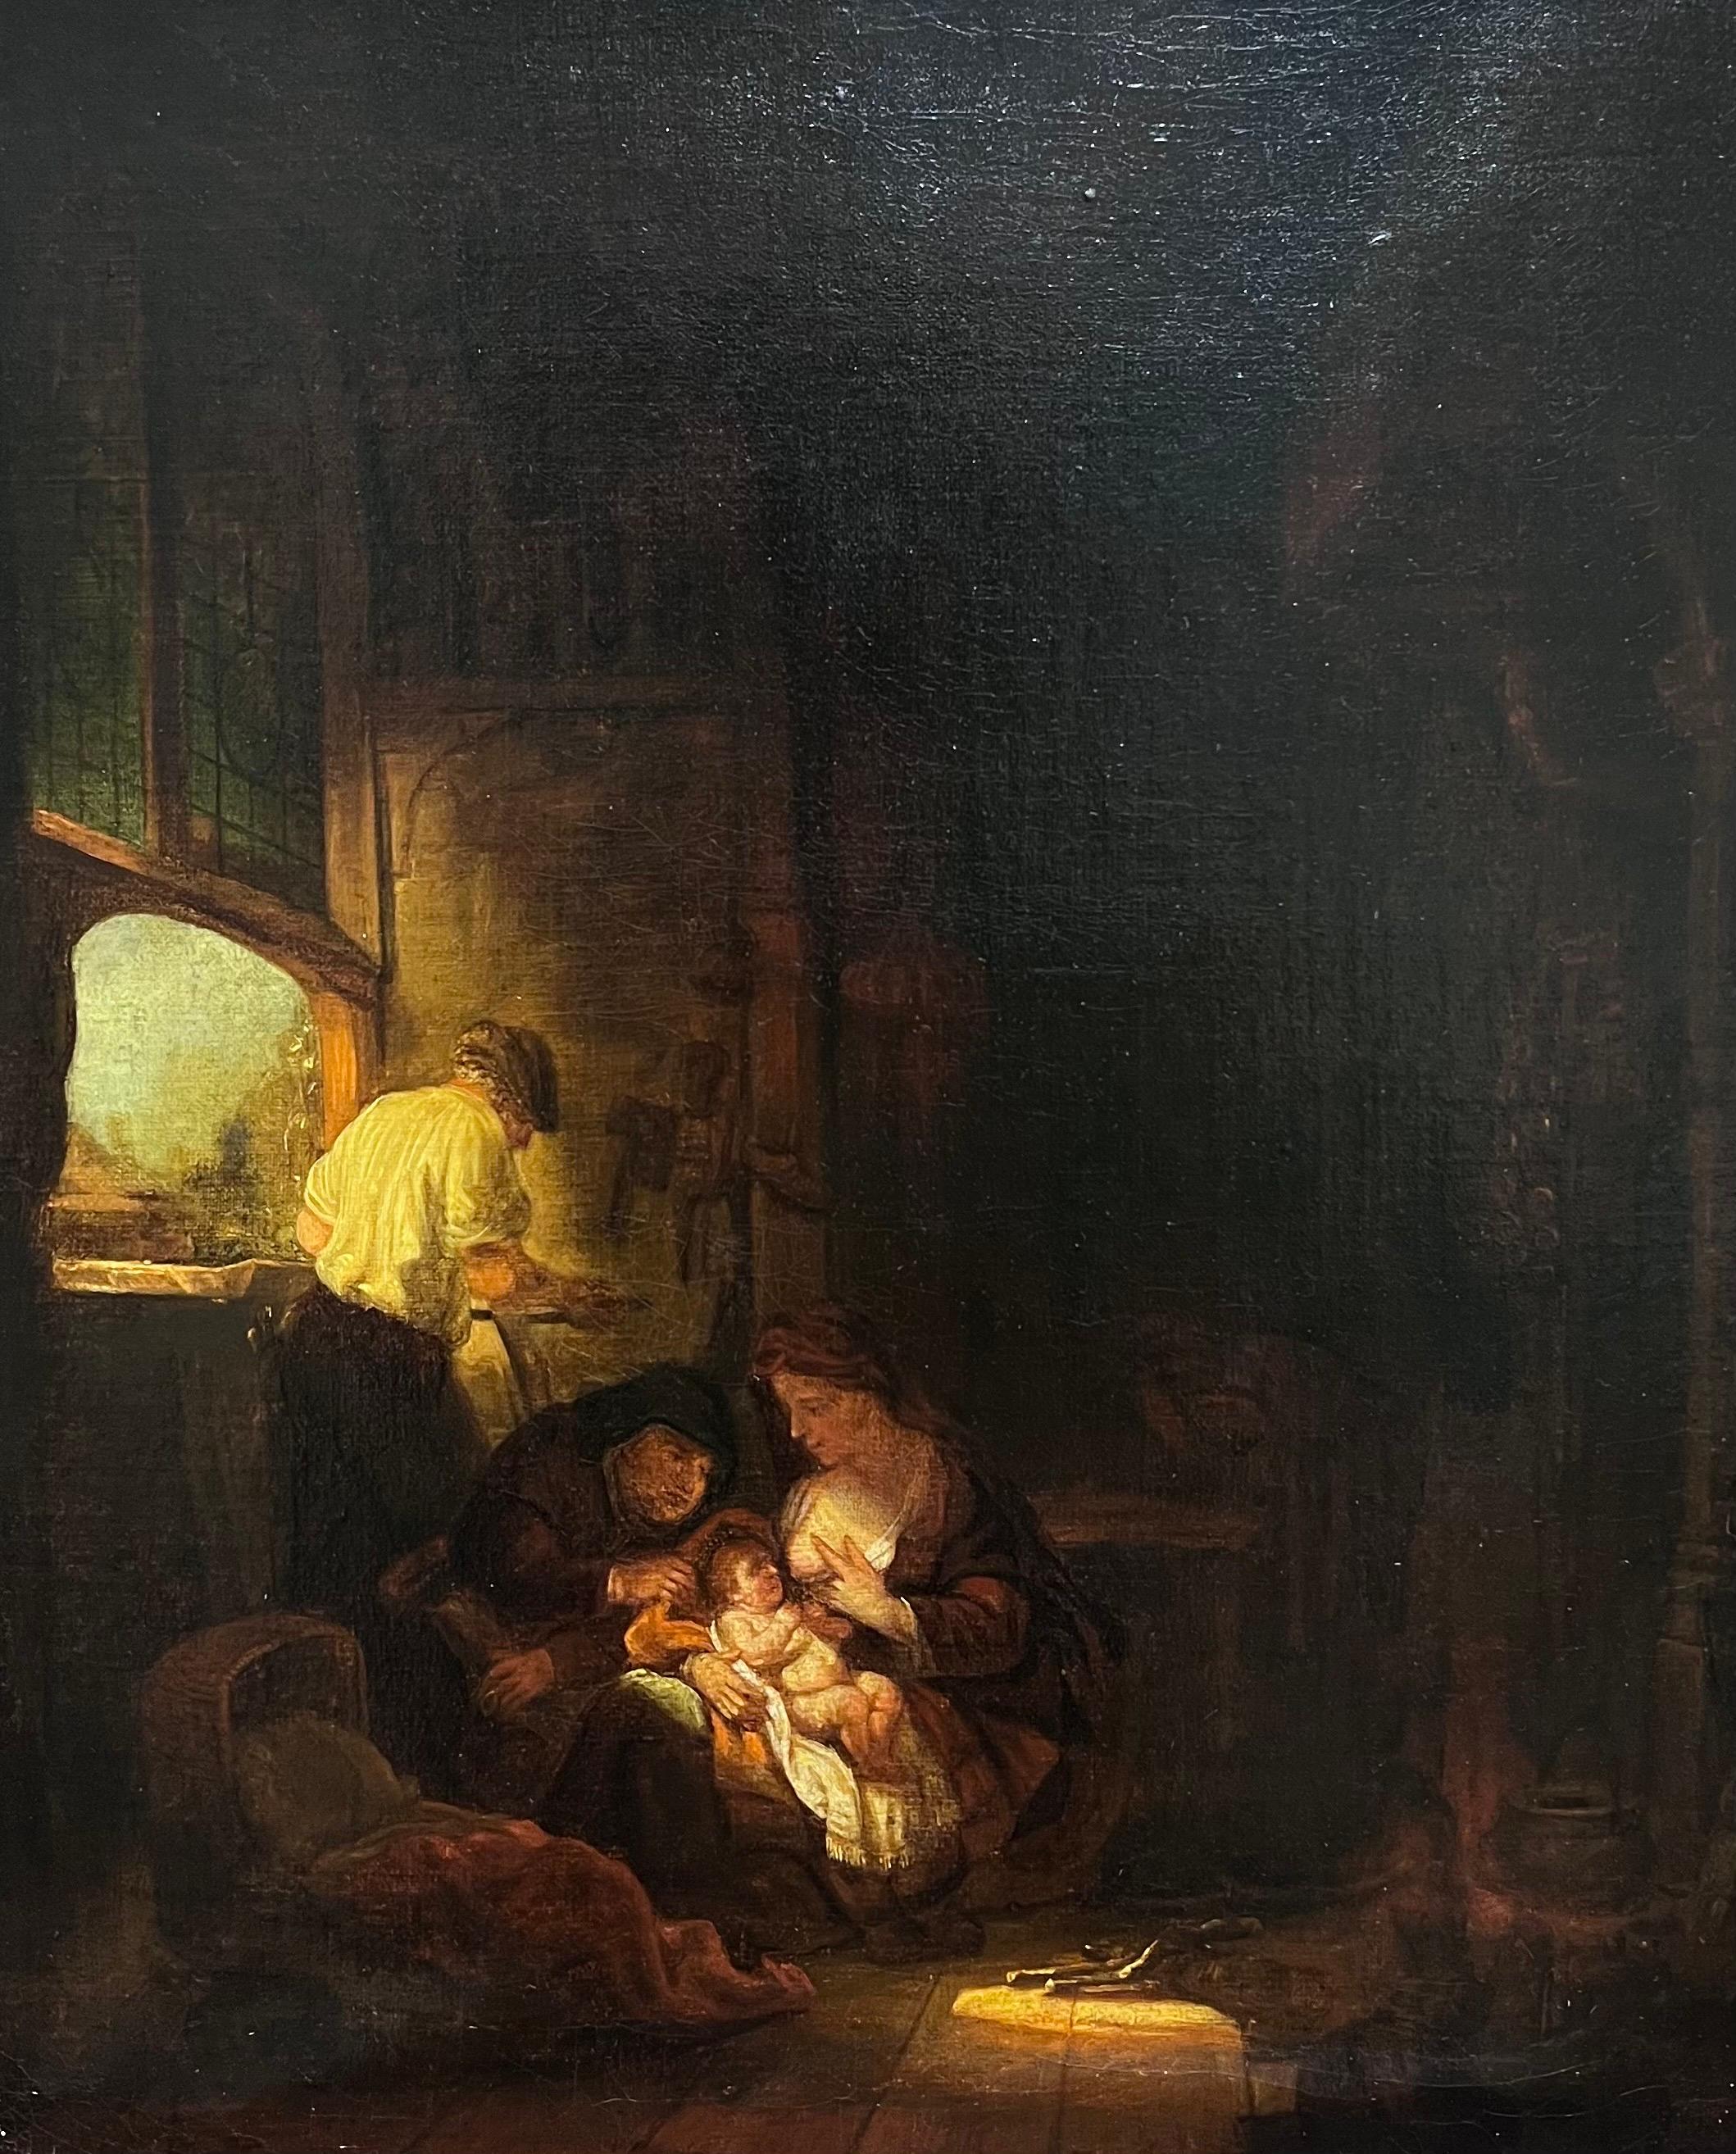 Baby geboren in Stable Interior, feines niederländisches Ölgemälde des 18. Jahrhunderts, Goldenes Zeitalters